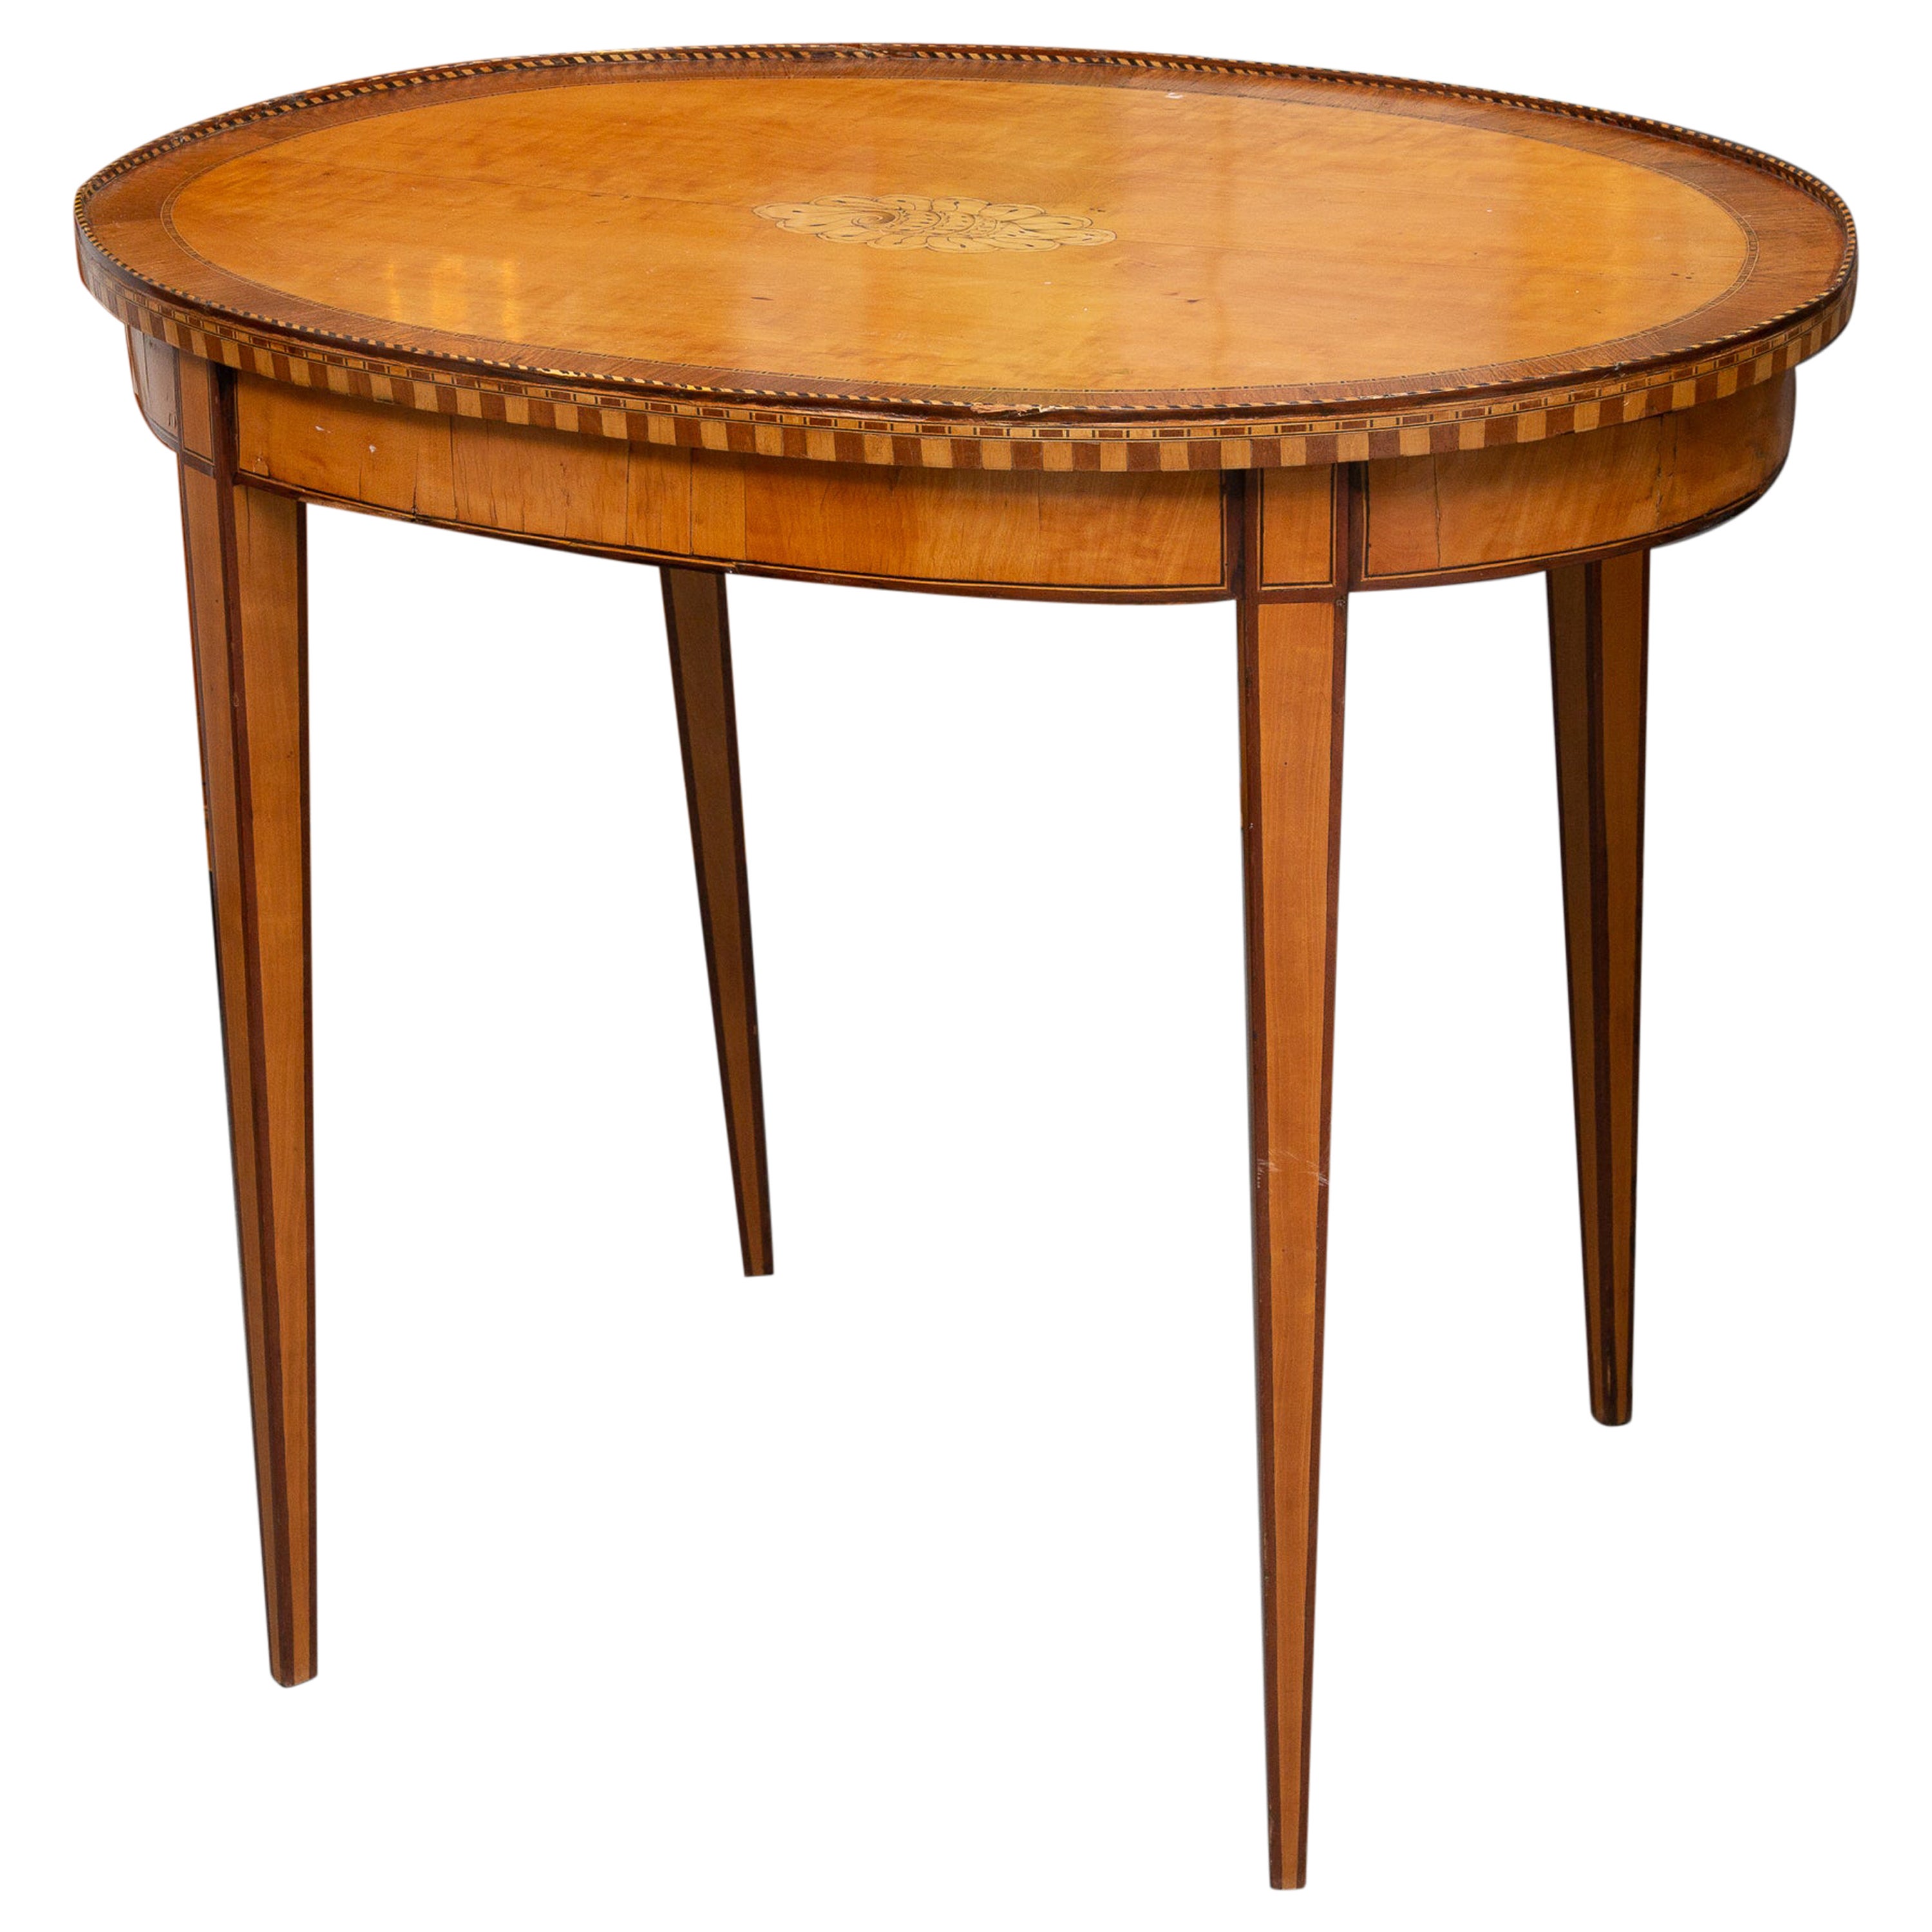 Table d'appoint ovale en bois de citronnier de style George III du 19ème siècle